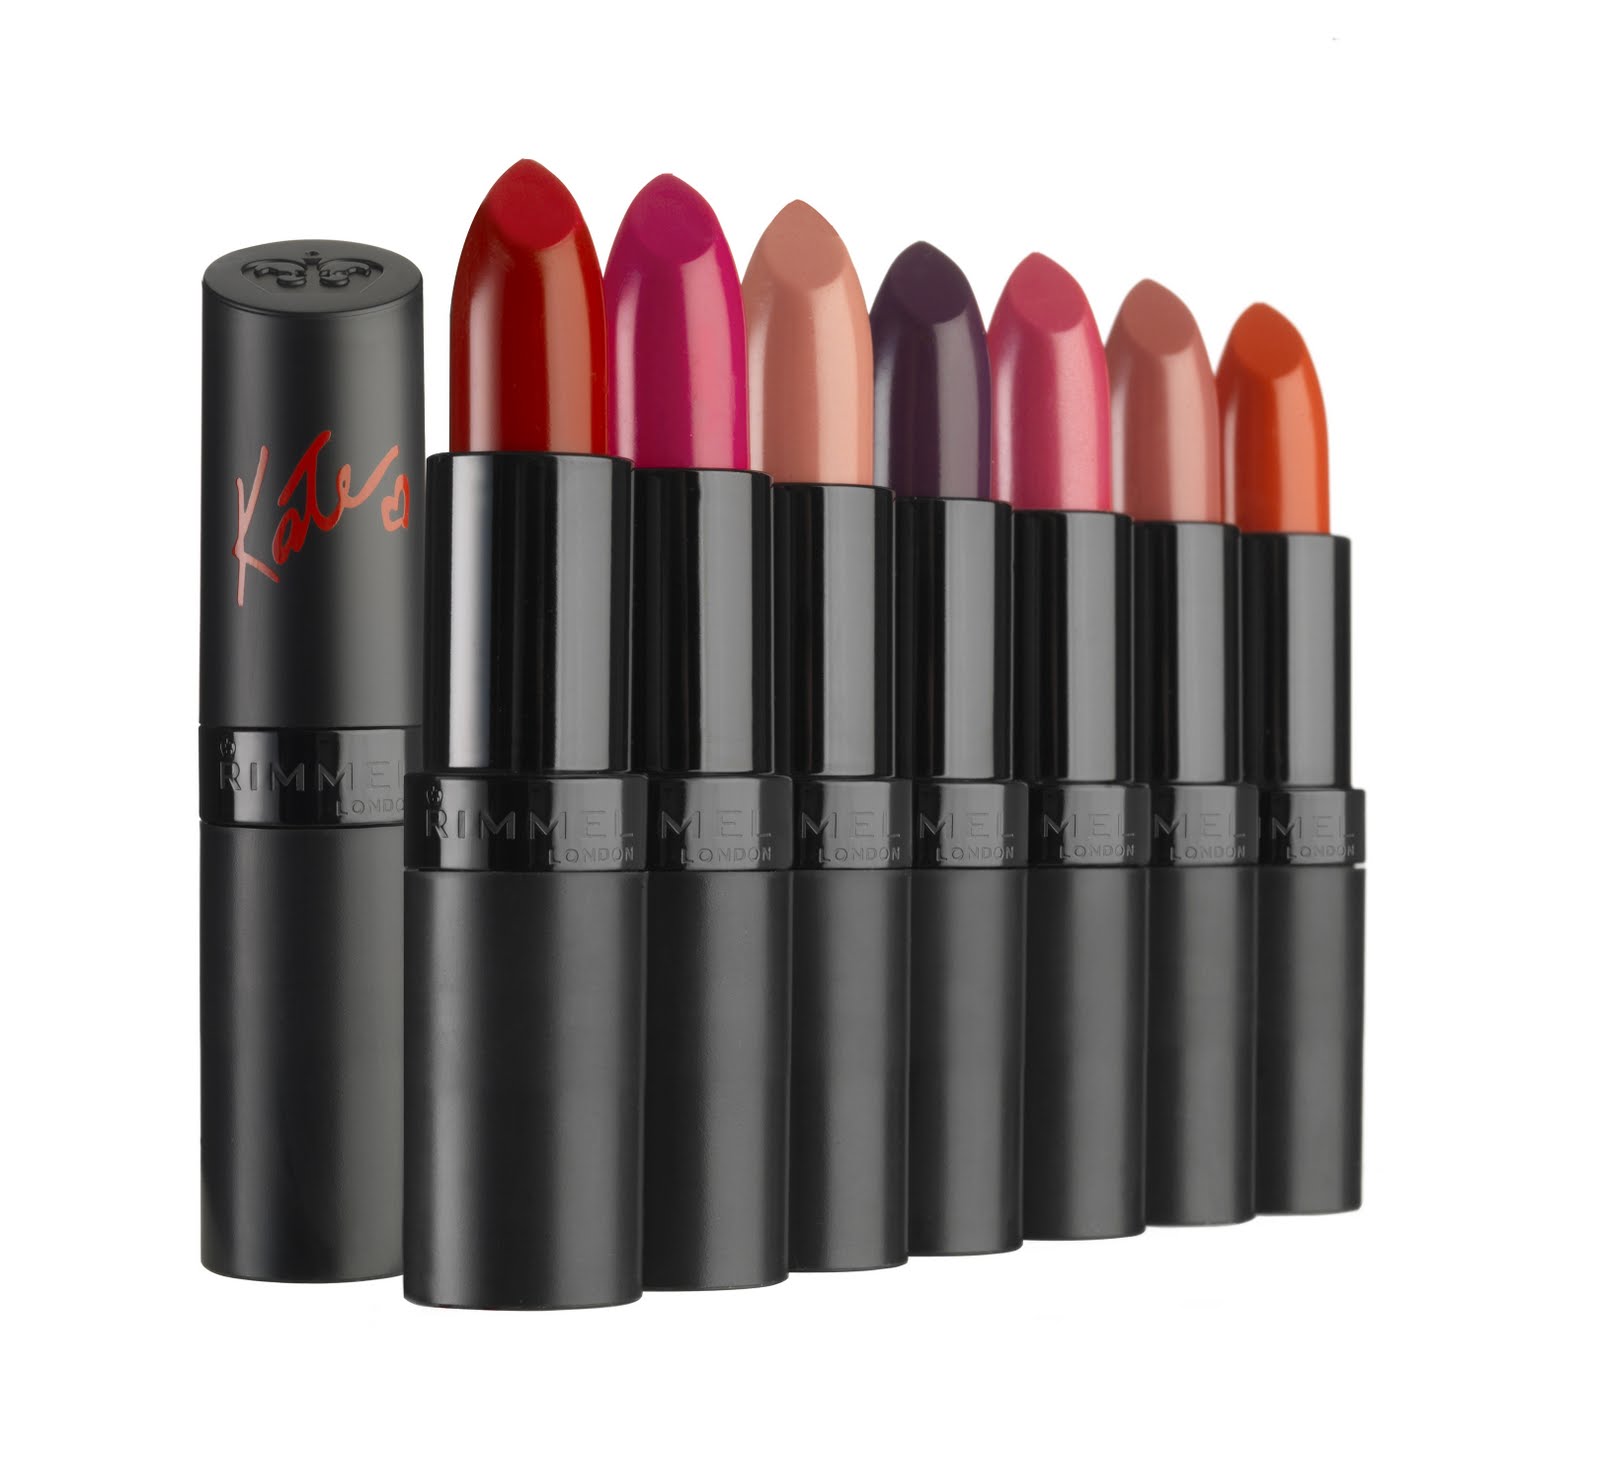 Kate Moss for Rimmel: Rose Gold Lipsticks - Fleur De Force